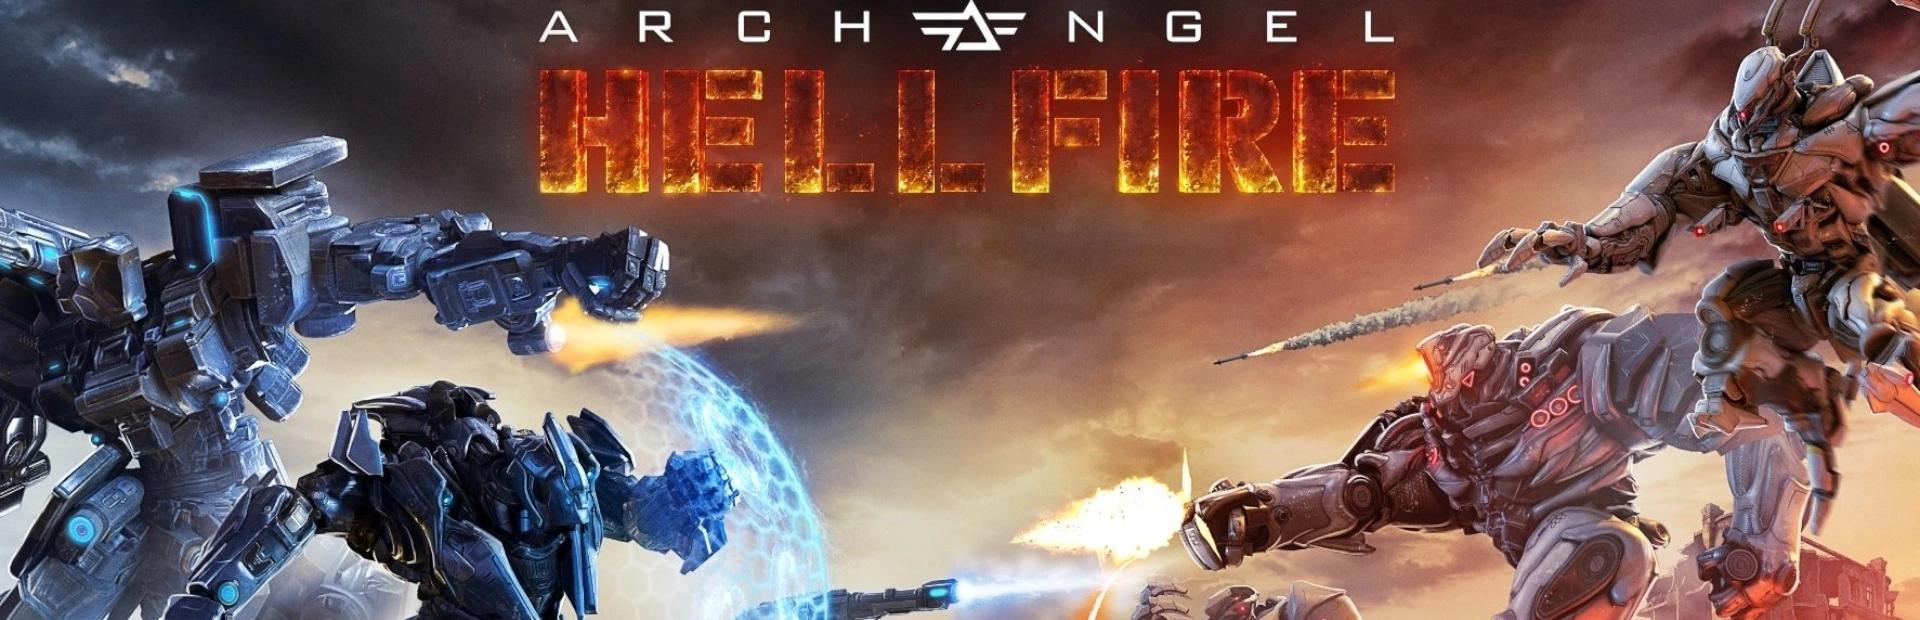 دانلود بازی Archangel: hellfire برای کامپیوتر | گیمباتو